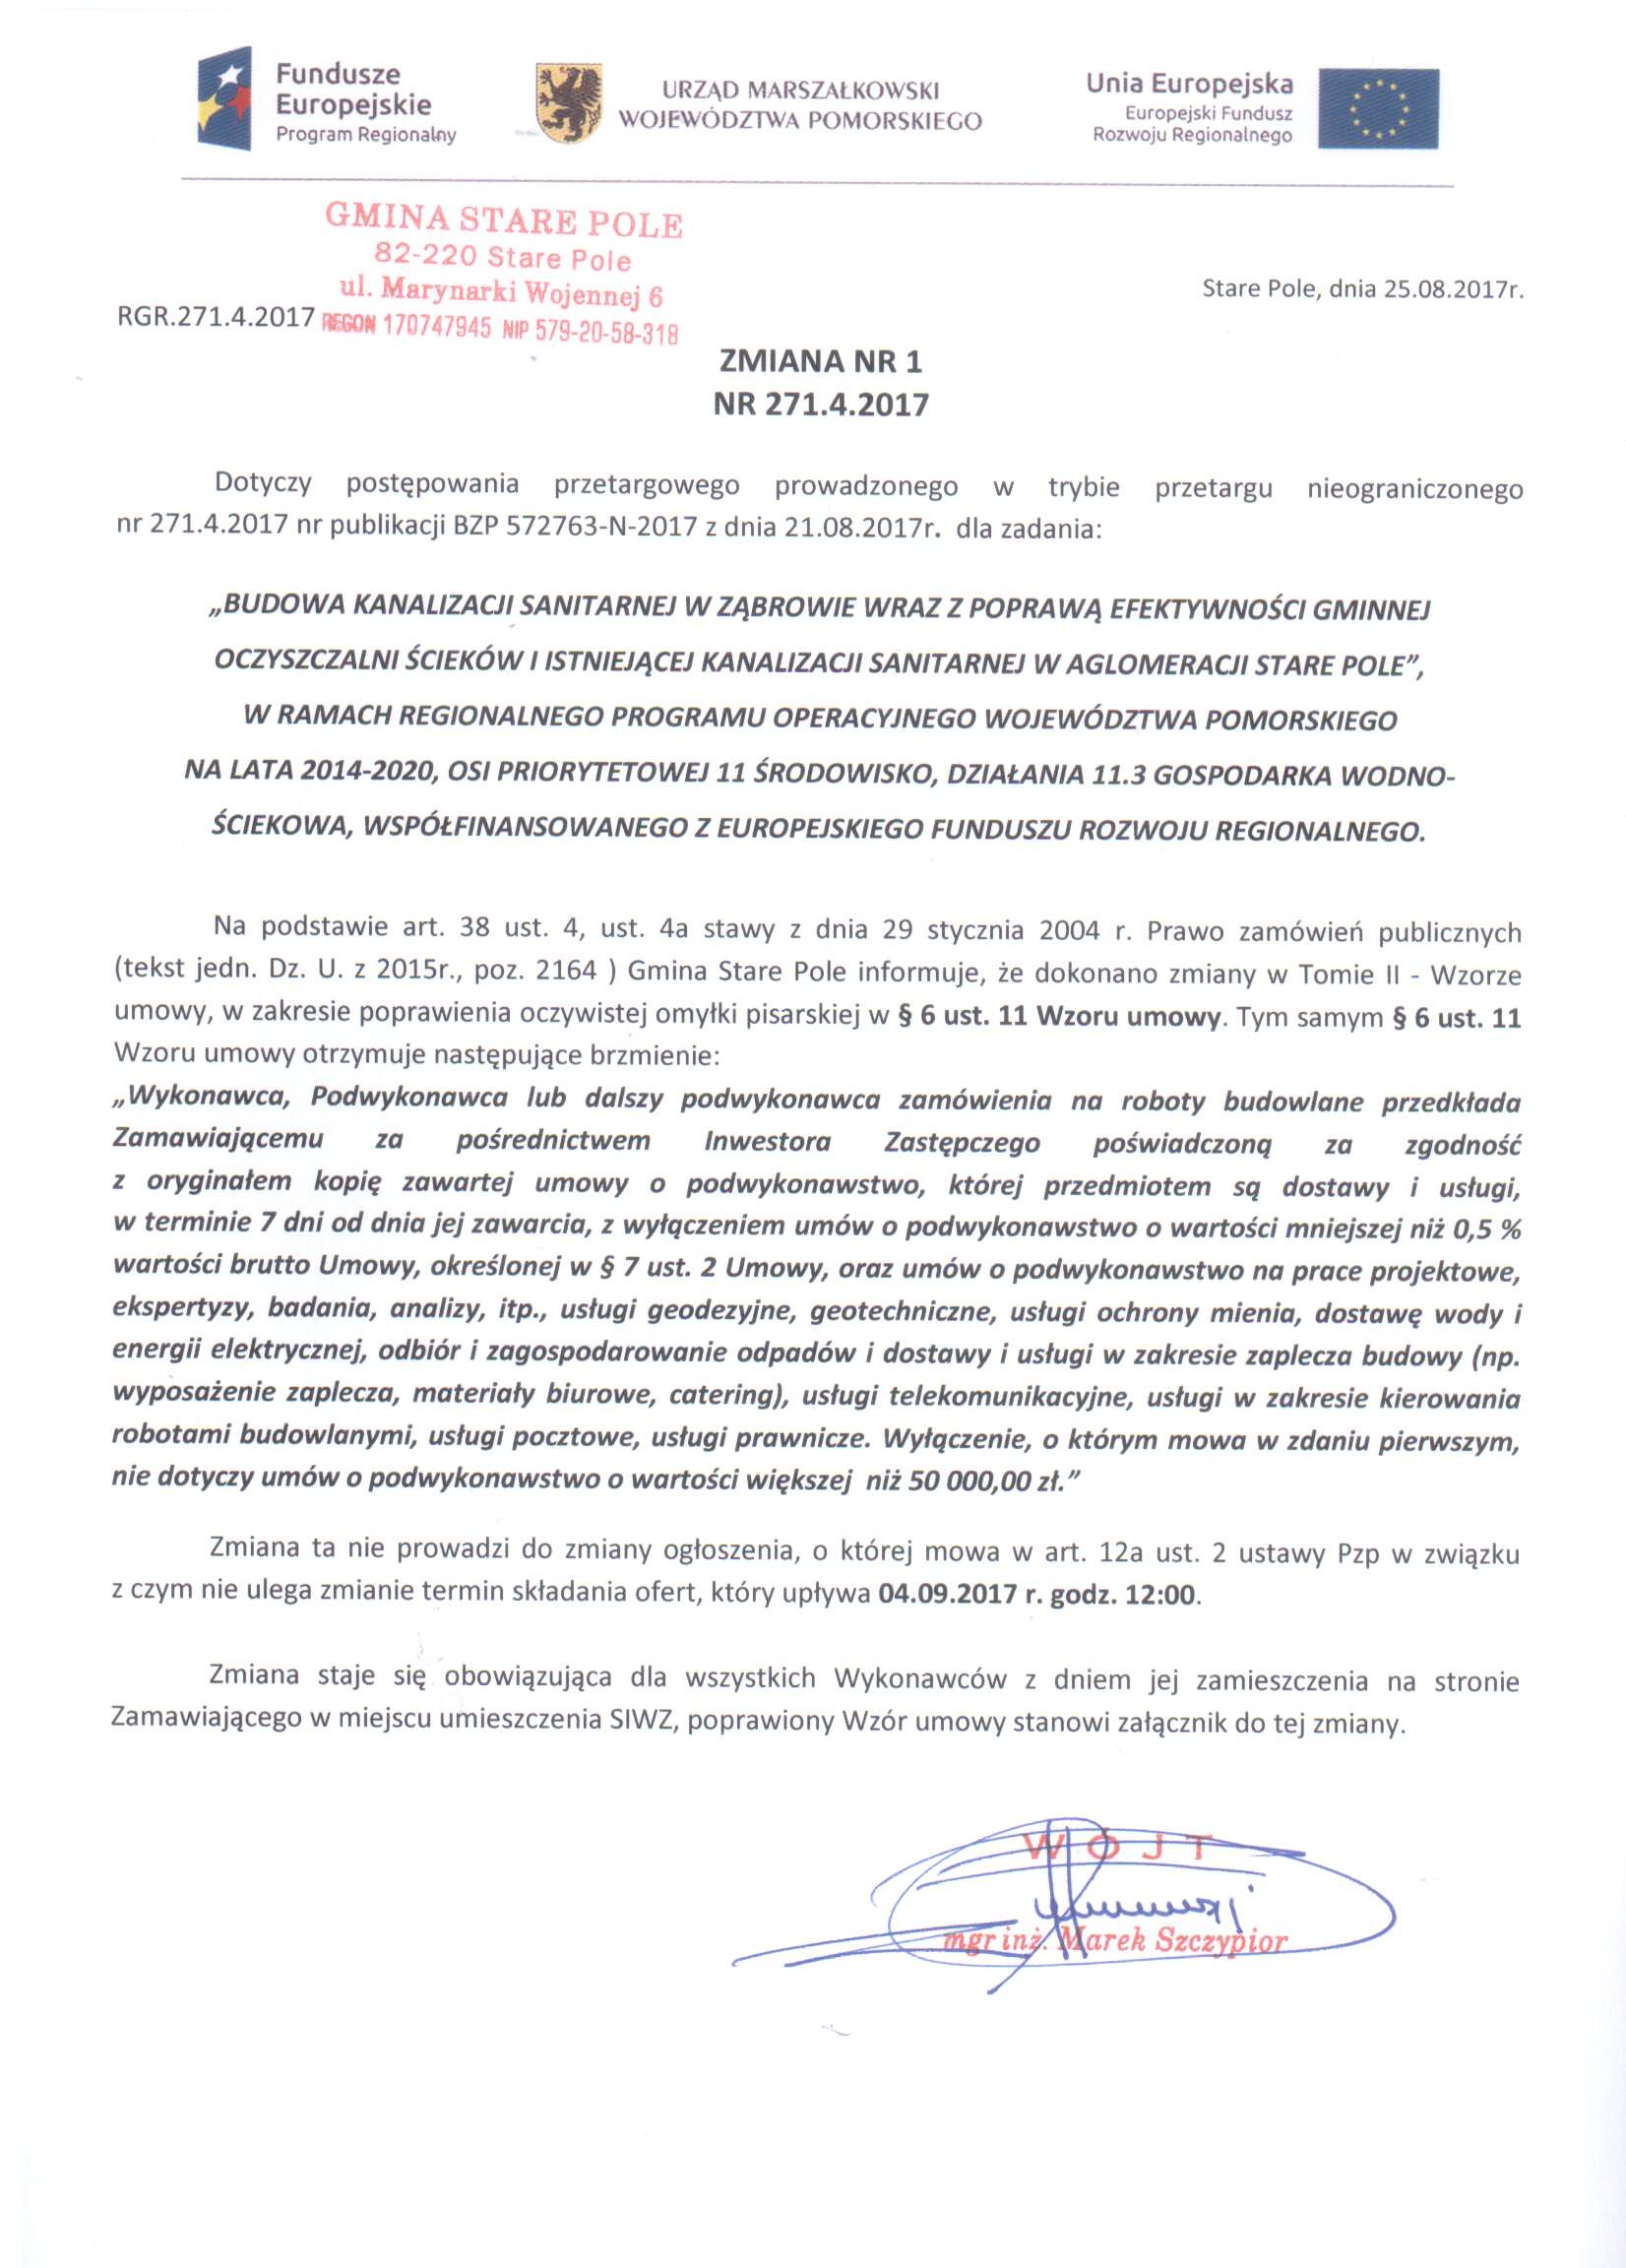 Ogłoszenie z dnia 25 sierpnia 2017 r. o zmianie ogłoszenia o przetargu dla zadania pn. "Budowa kanalizacji sanitarnej w Ząbrowie..."